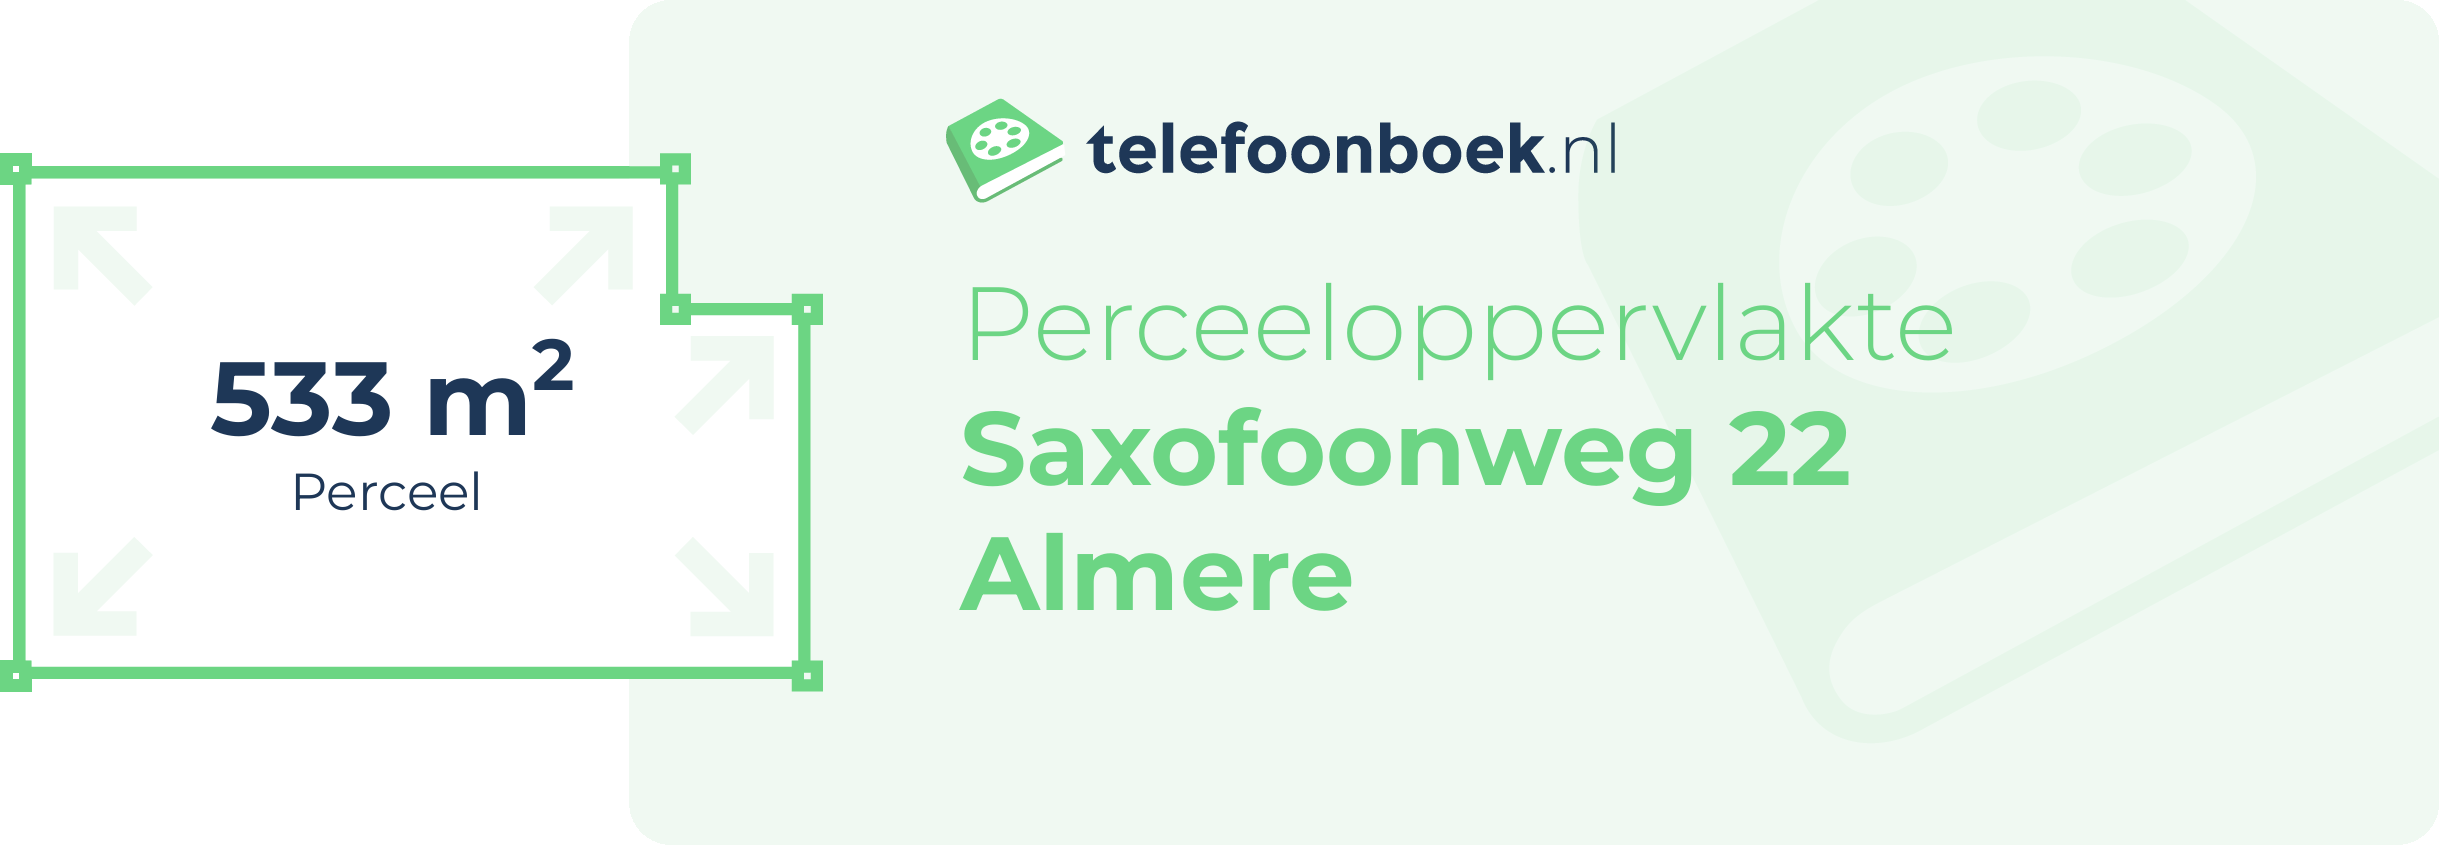 Perceeloppervlakte Saxofoonweg 22 Almere